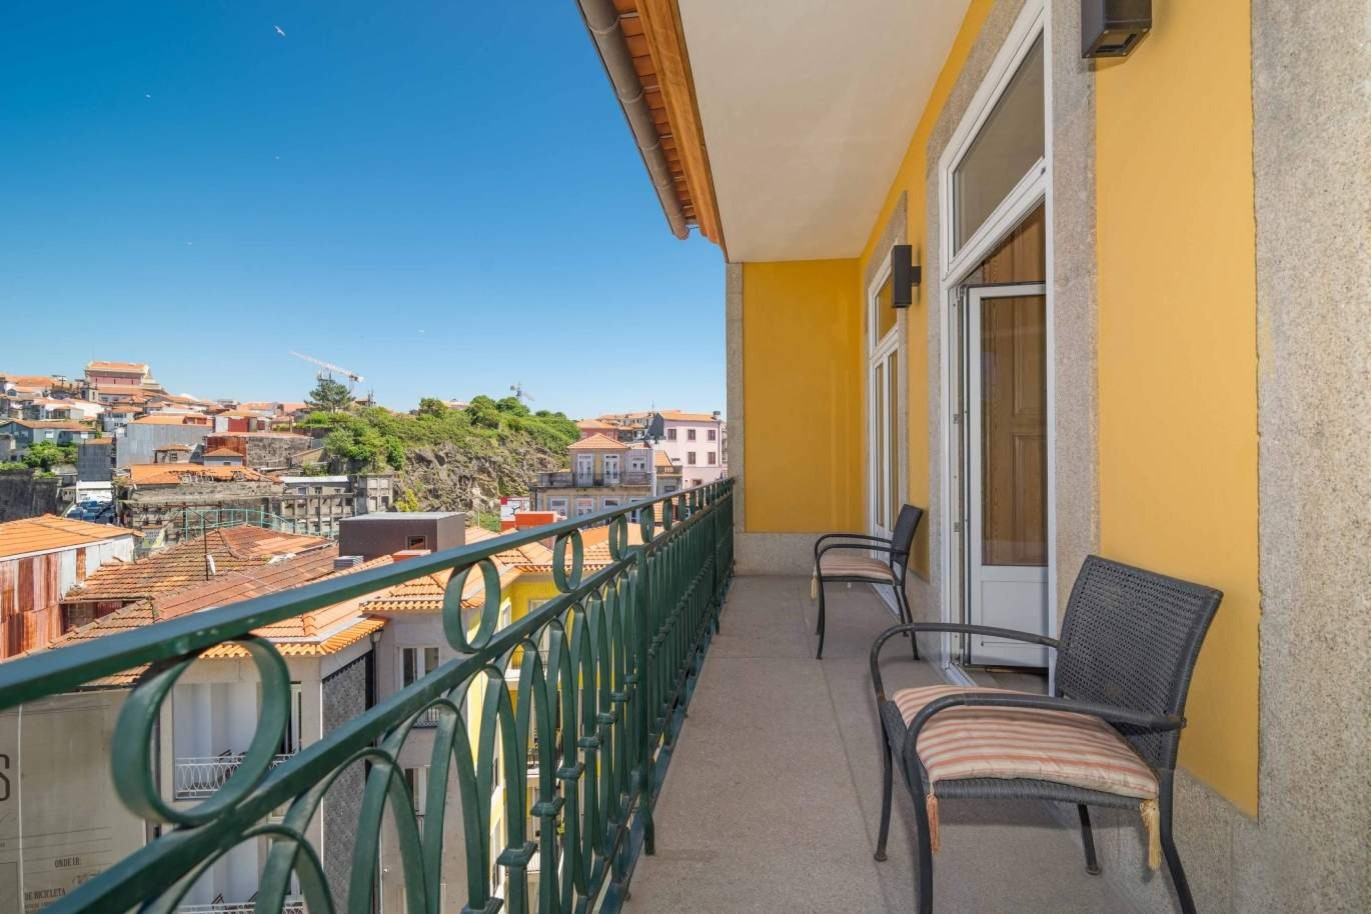 Duplex-Penthouse mit Balkon, zu verkaufen, in der Innenstadt von Porto, Portugal_220282